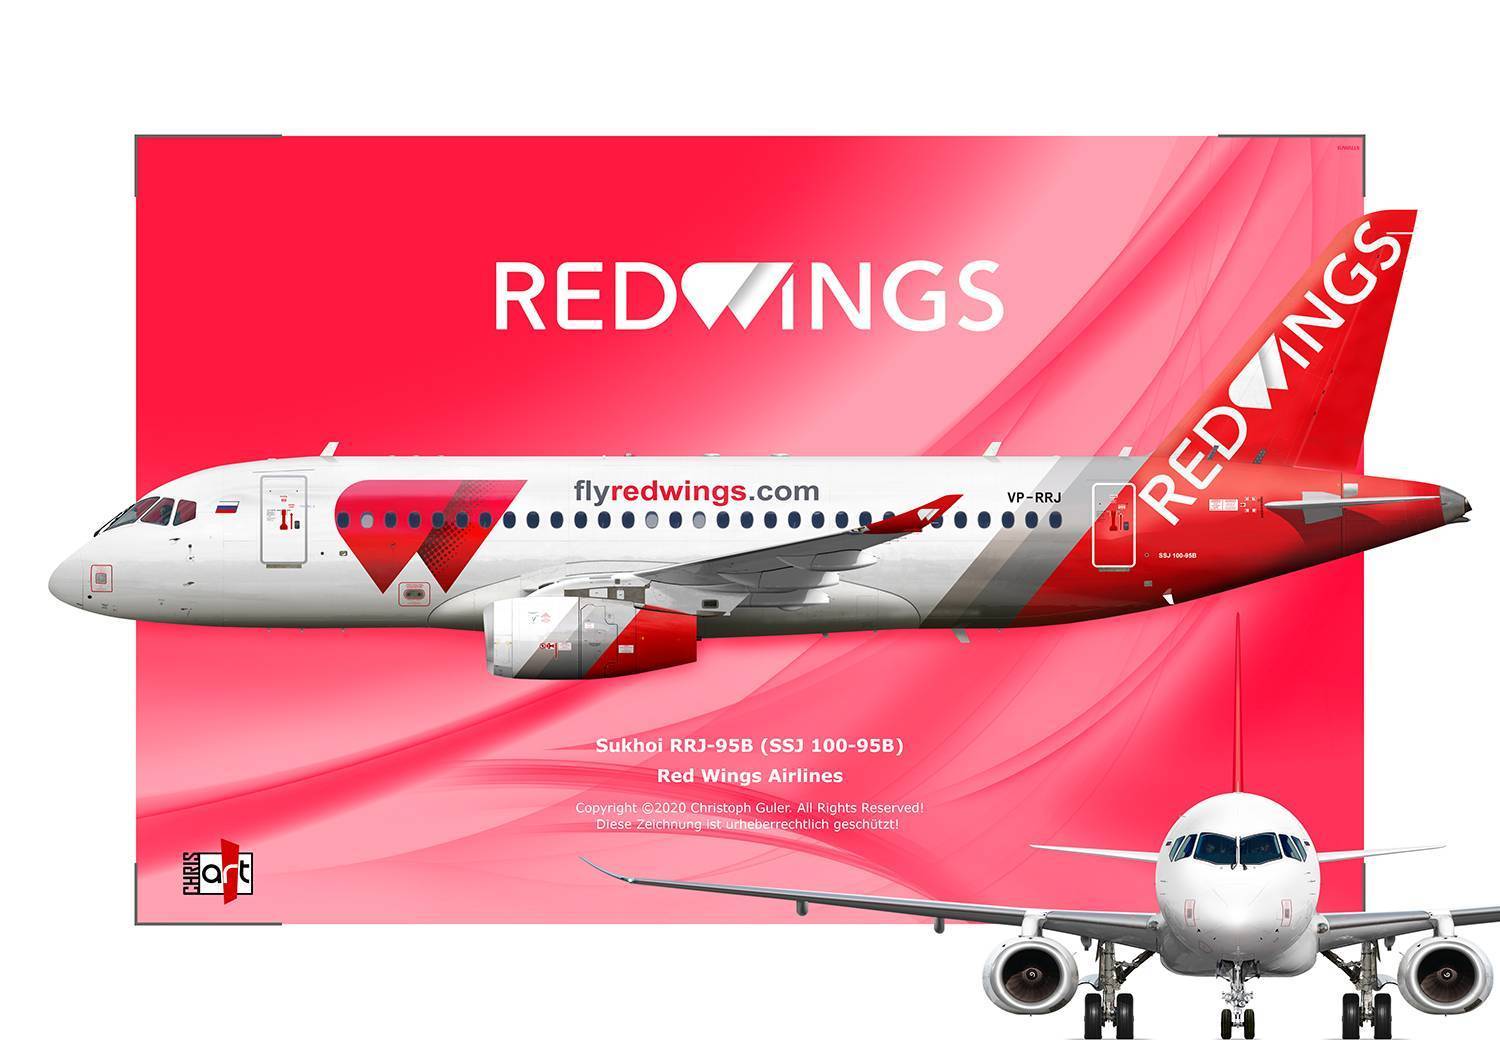 Red wings: багаж - нормы и правила провоза багажа в самолете ред вингс, сколько стоит перевес - наш багаж